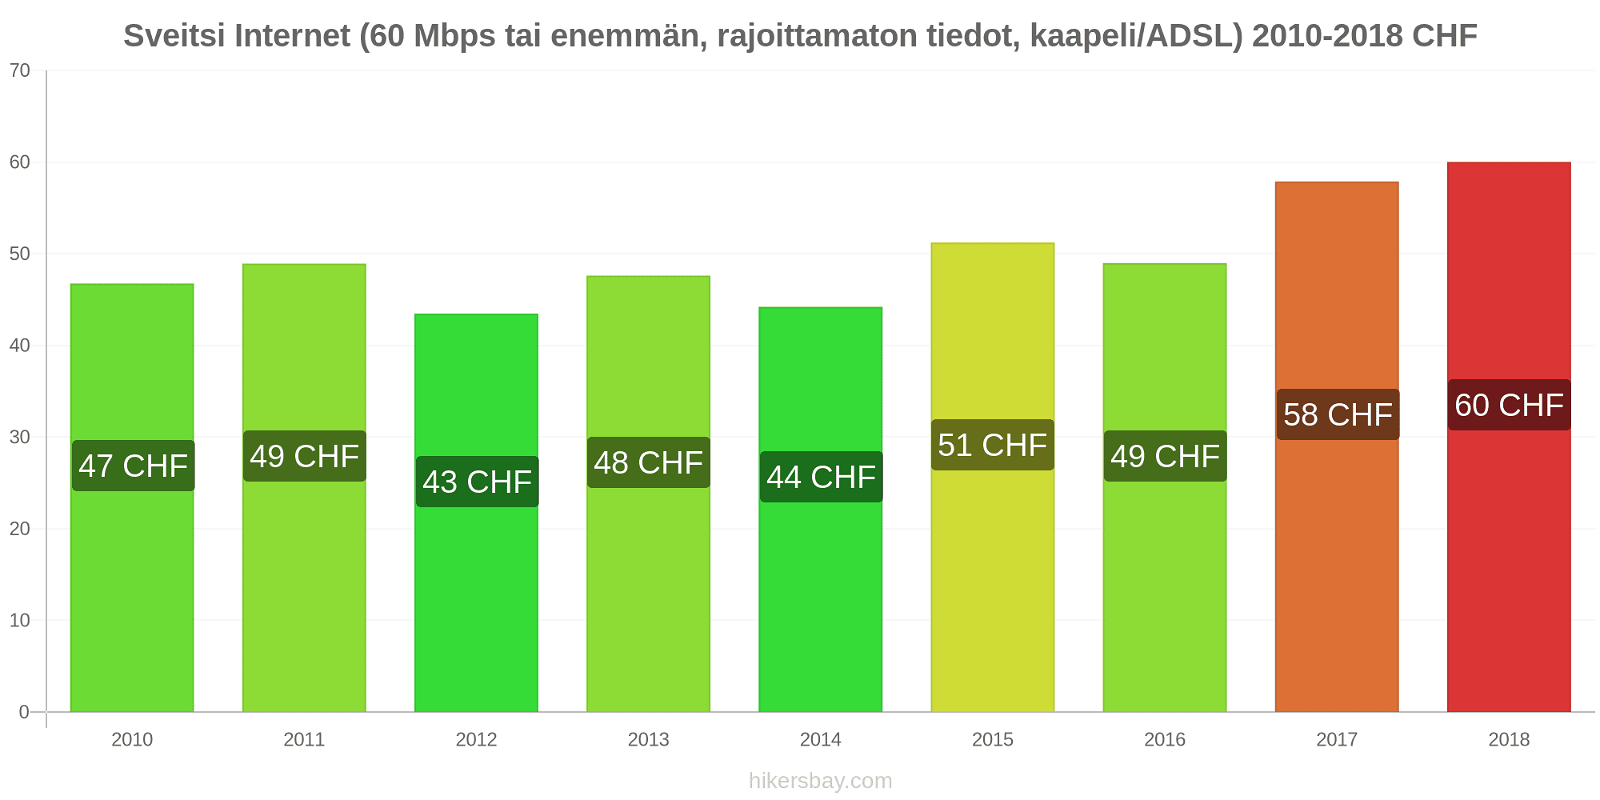 Sveitsi hintojen muutokset Internet (60 Mbps tai enemmän, rajoittamaton tiedot, kaapeli/ADSL) hikersbay.com